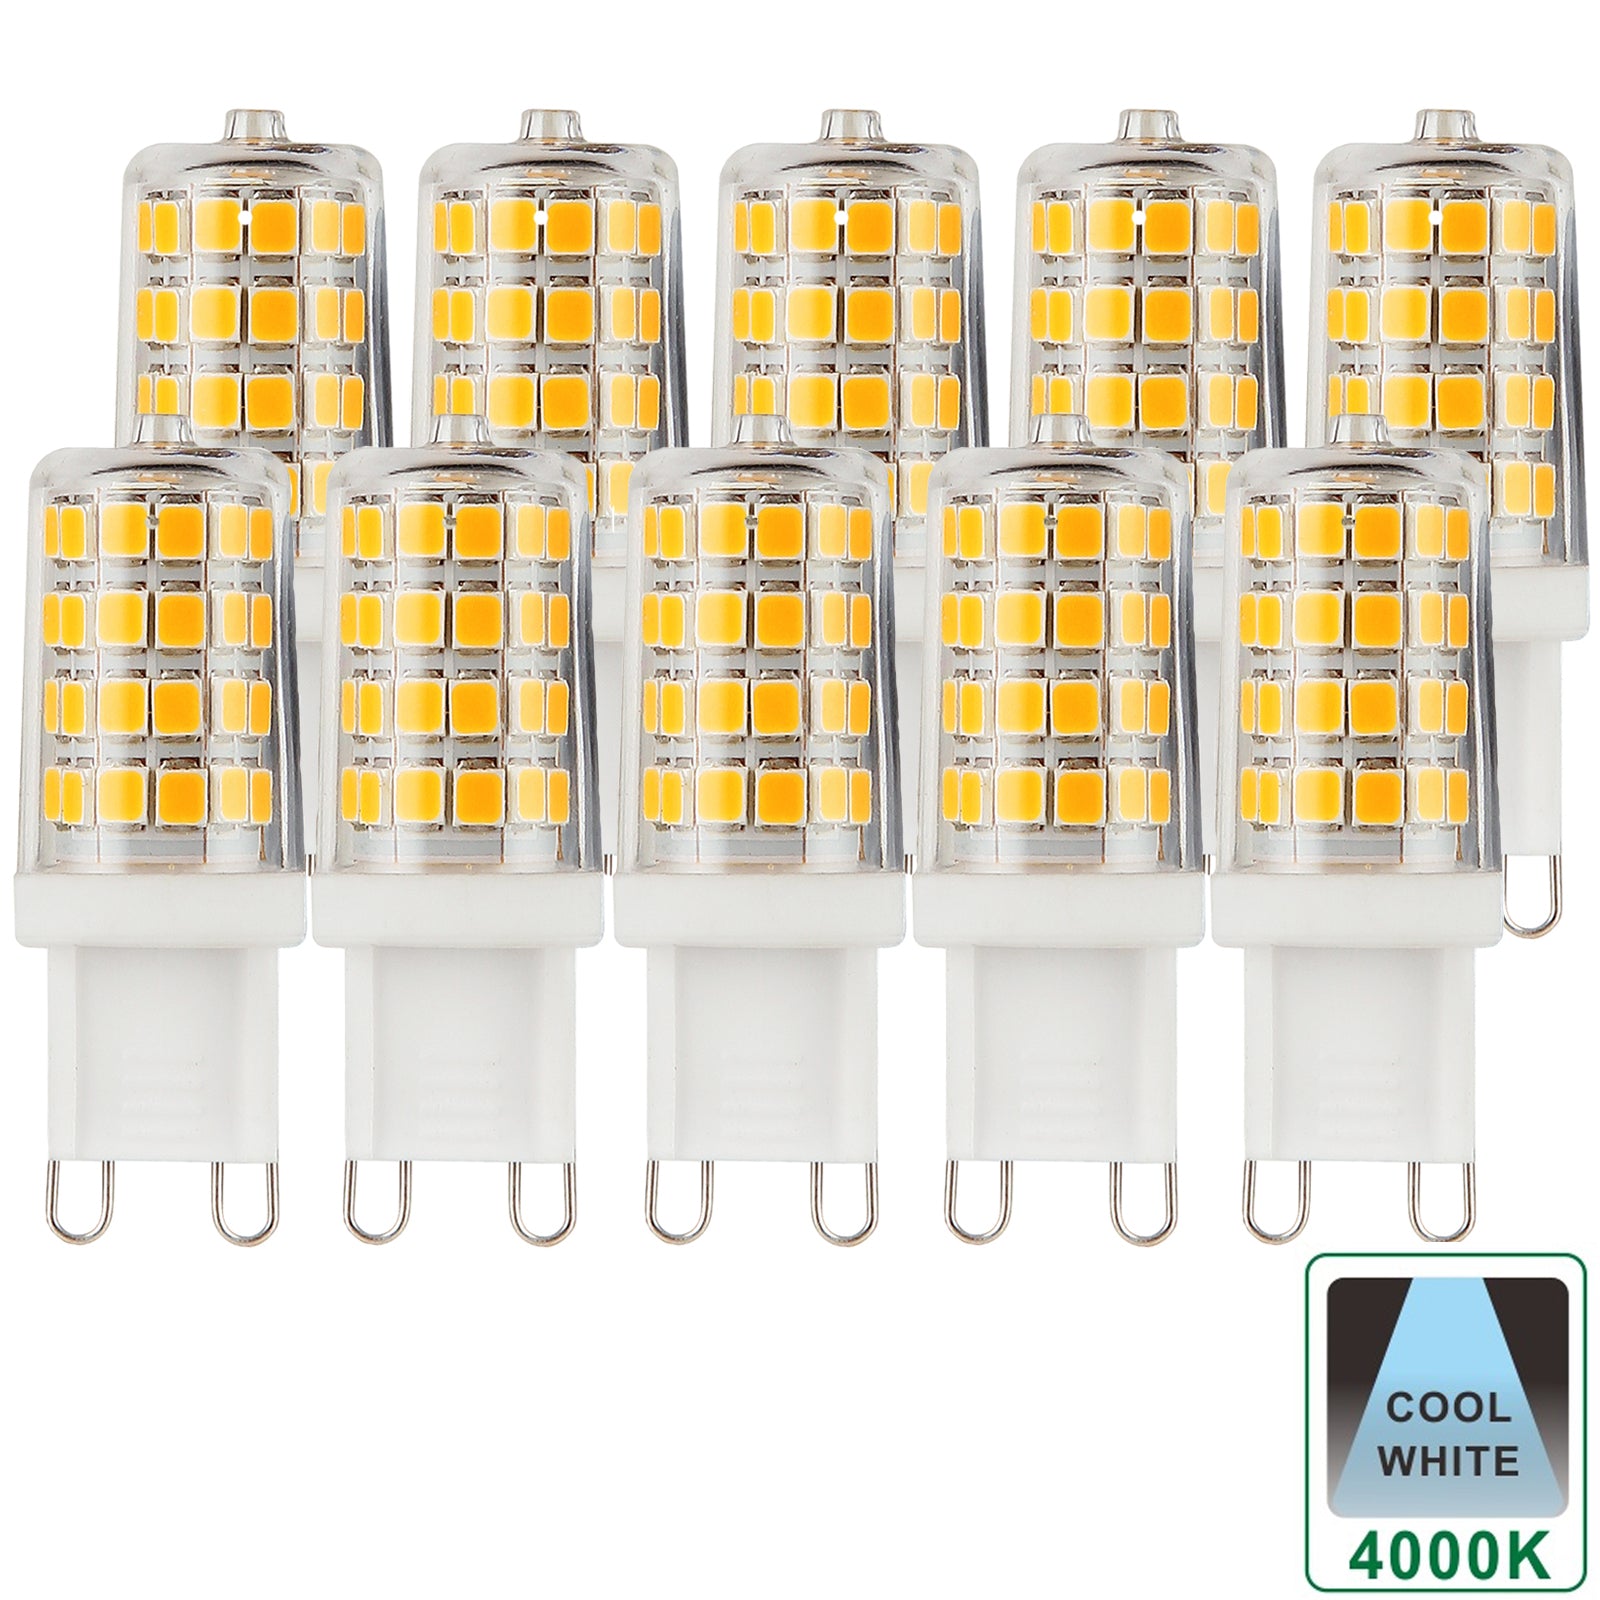 Harper Living G9 3.5 W Cool White Capsule LED Bulb, Pack of 10